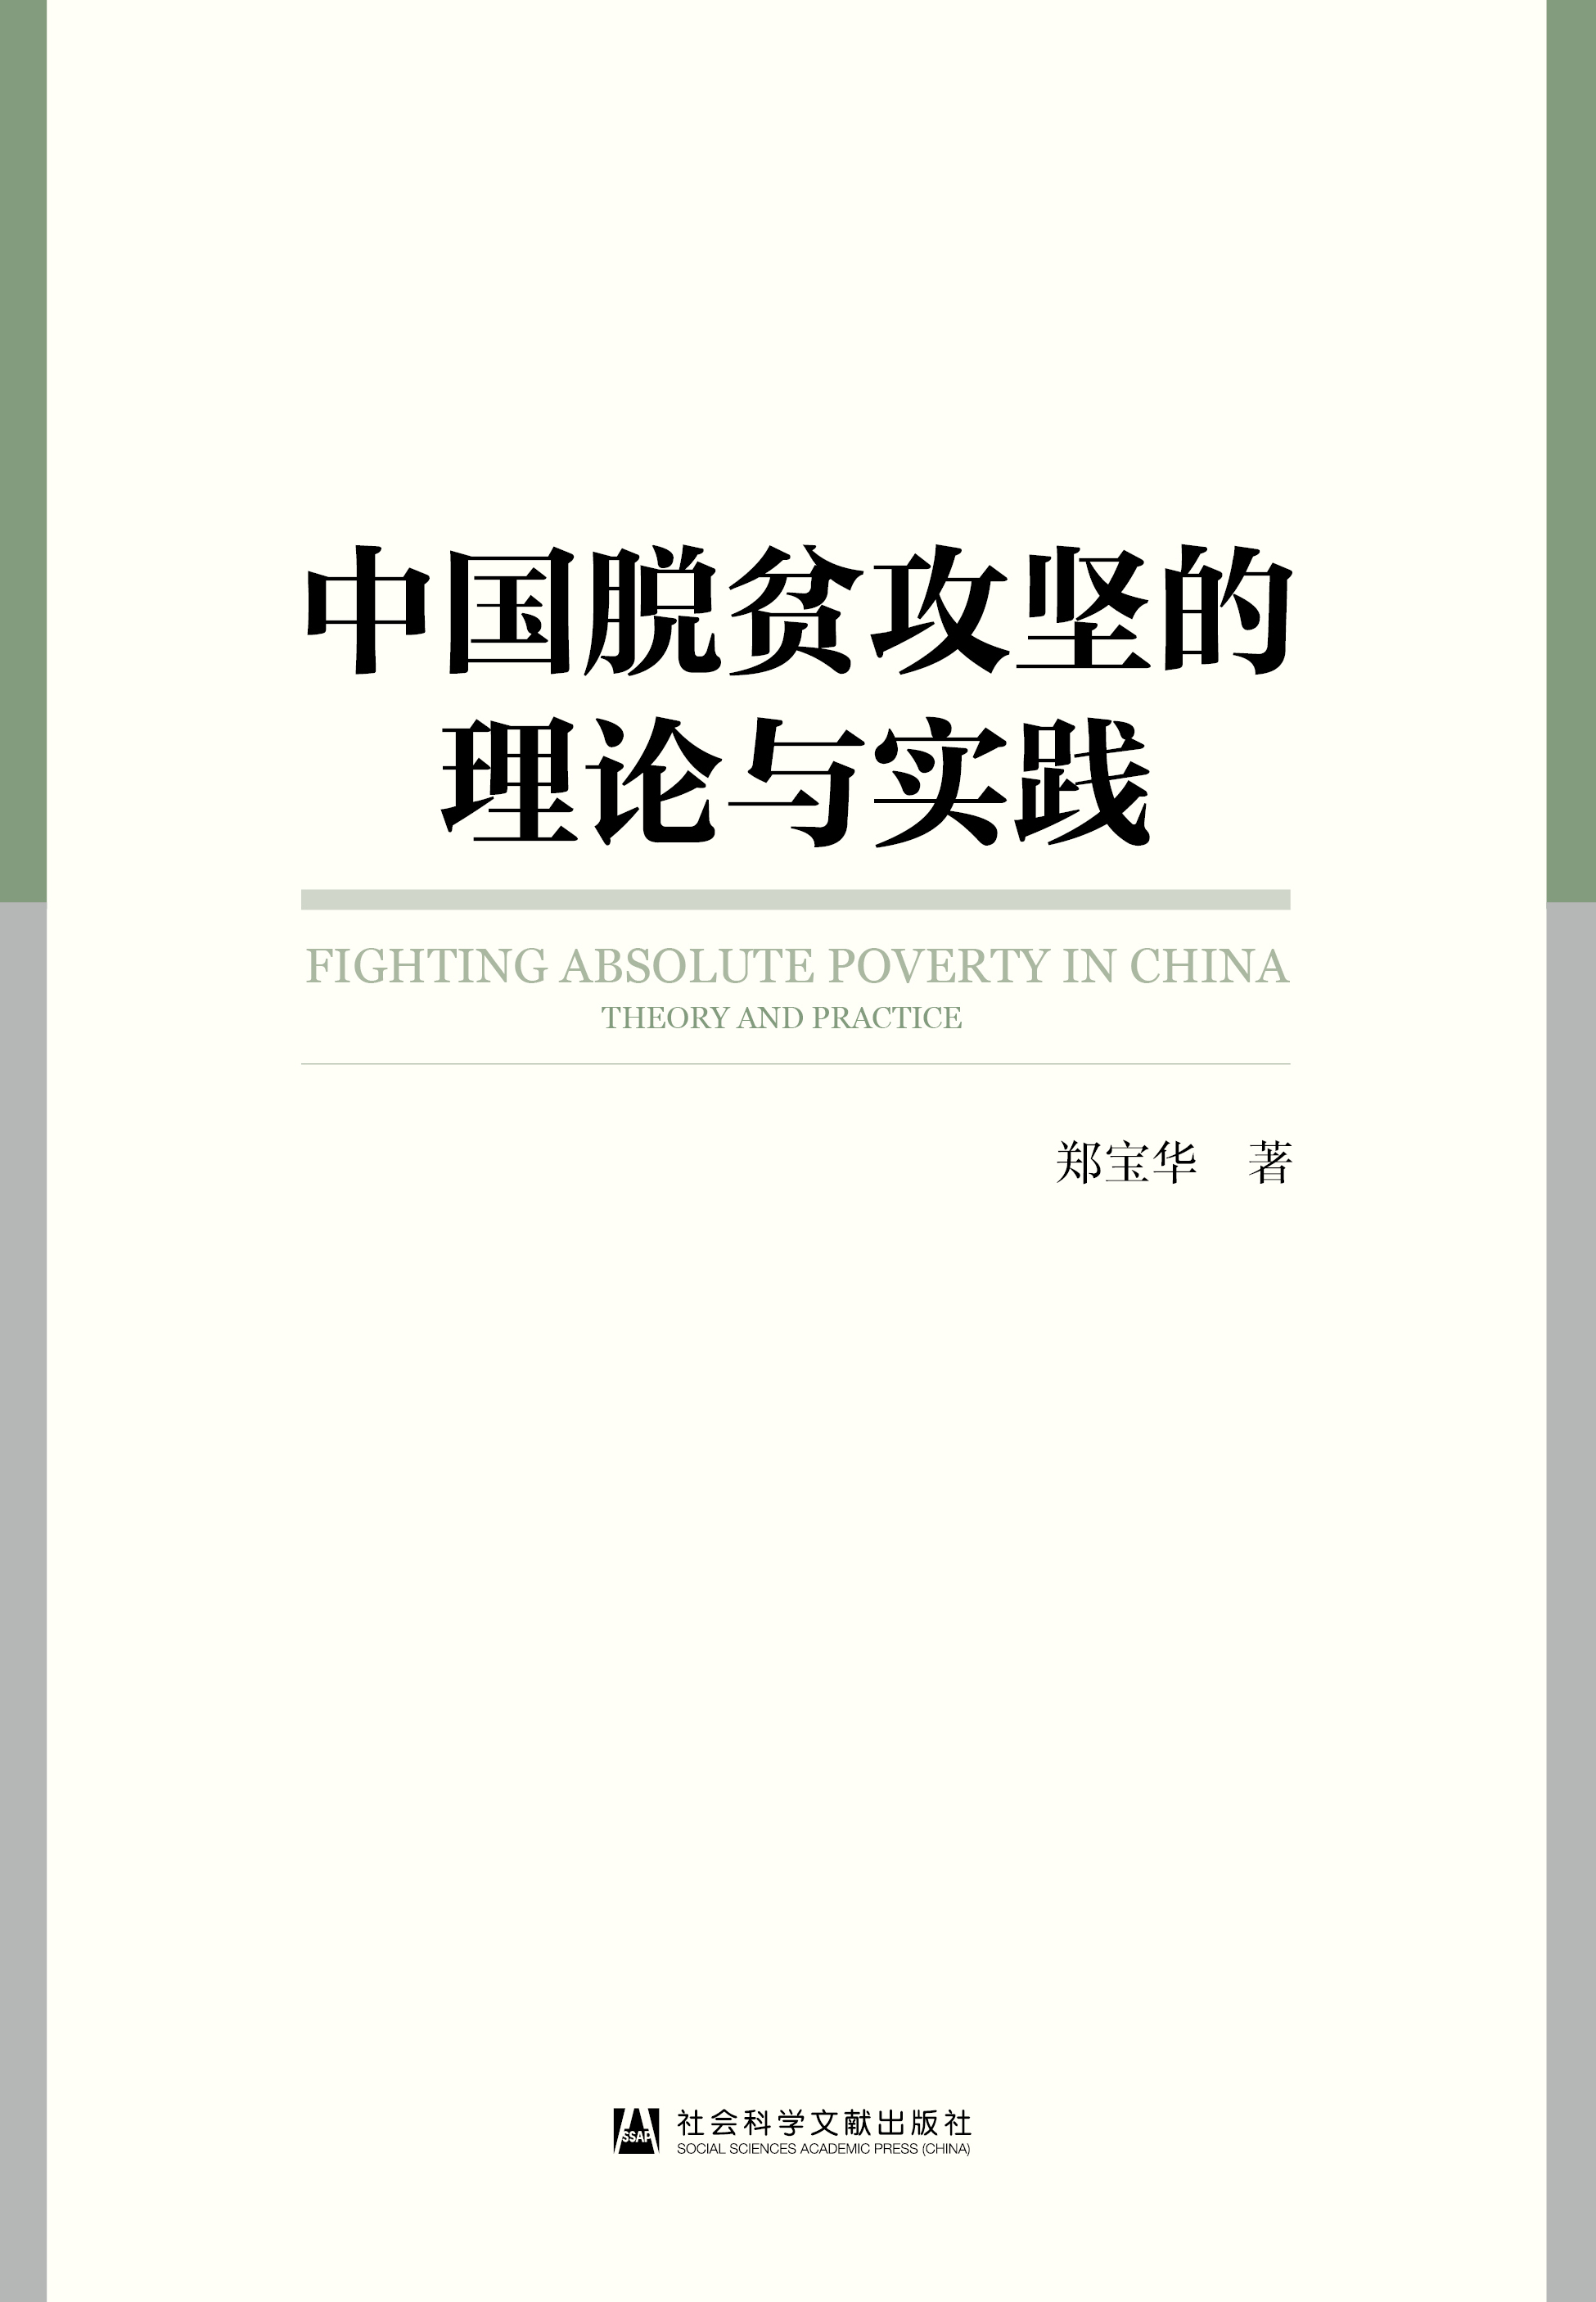 中国脱贫攻坚的理论与实践（978-7-5201-9207-1）_正封面.jpg